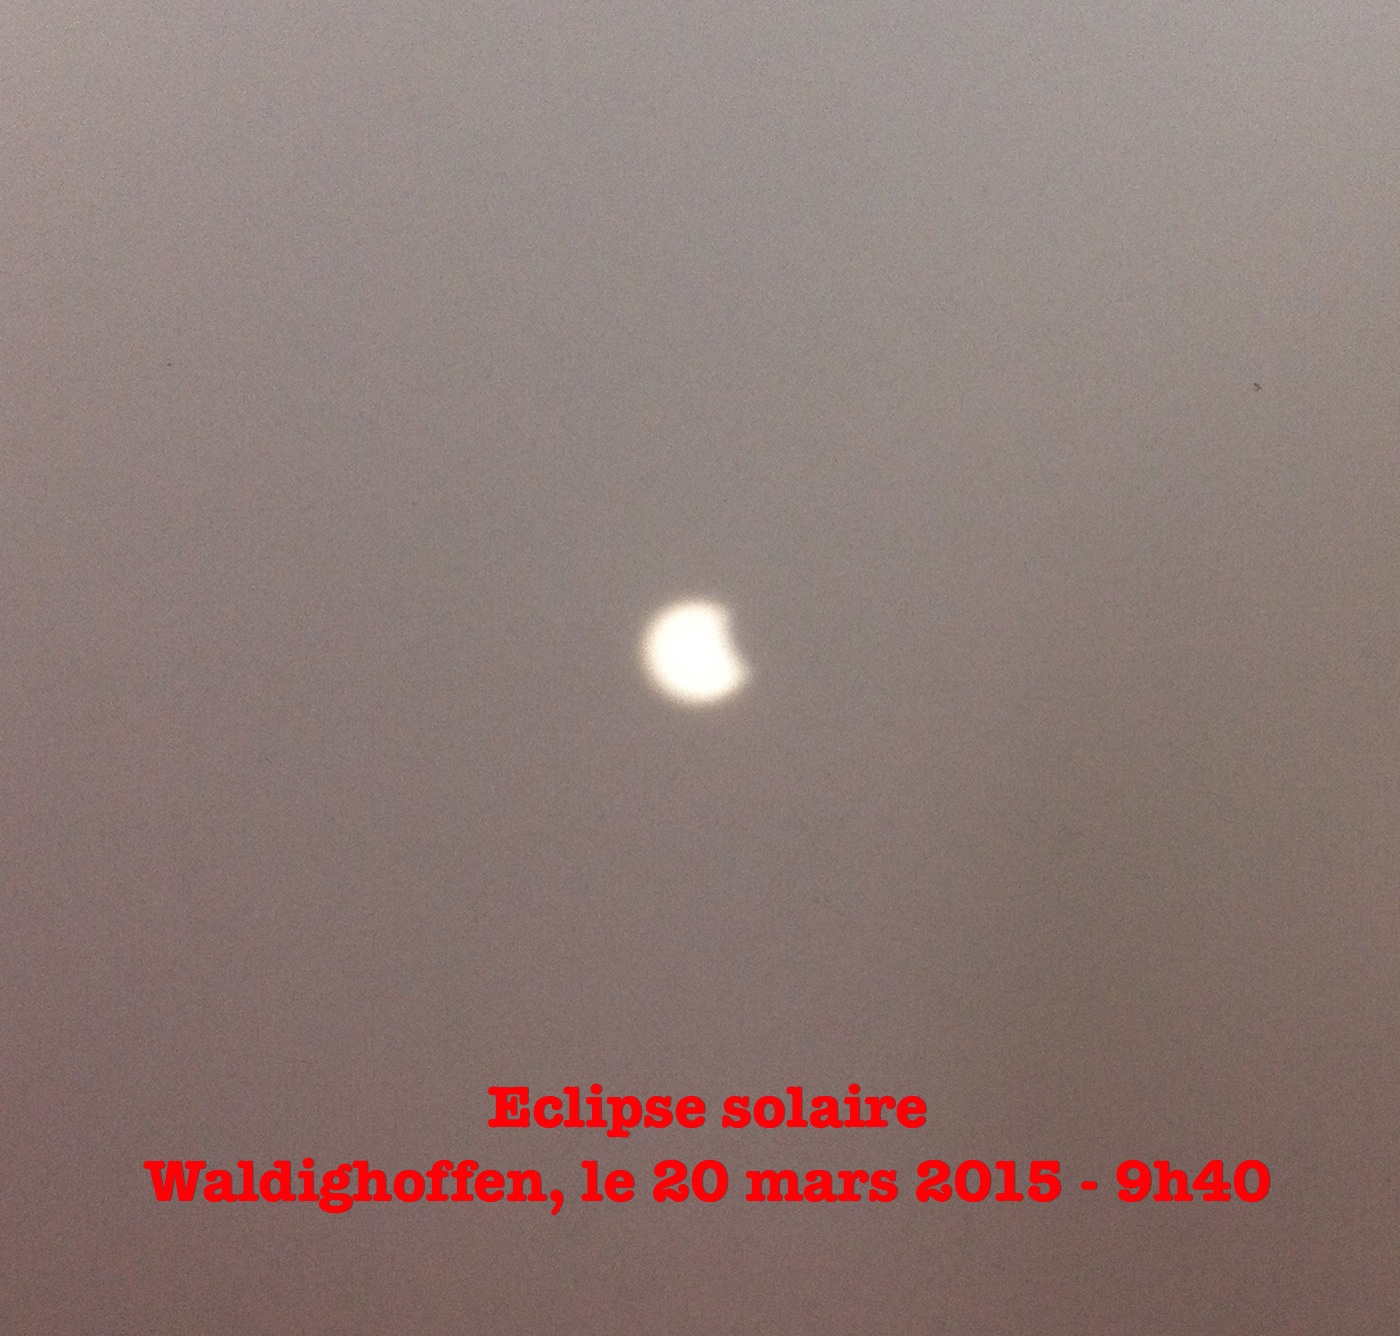 Eclipse 9h40